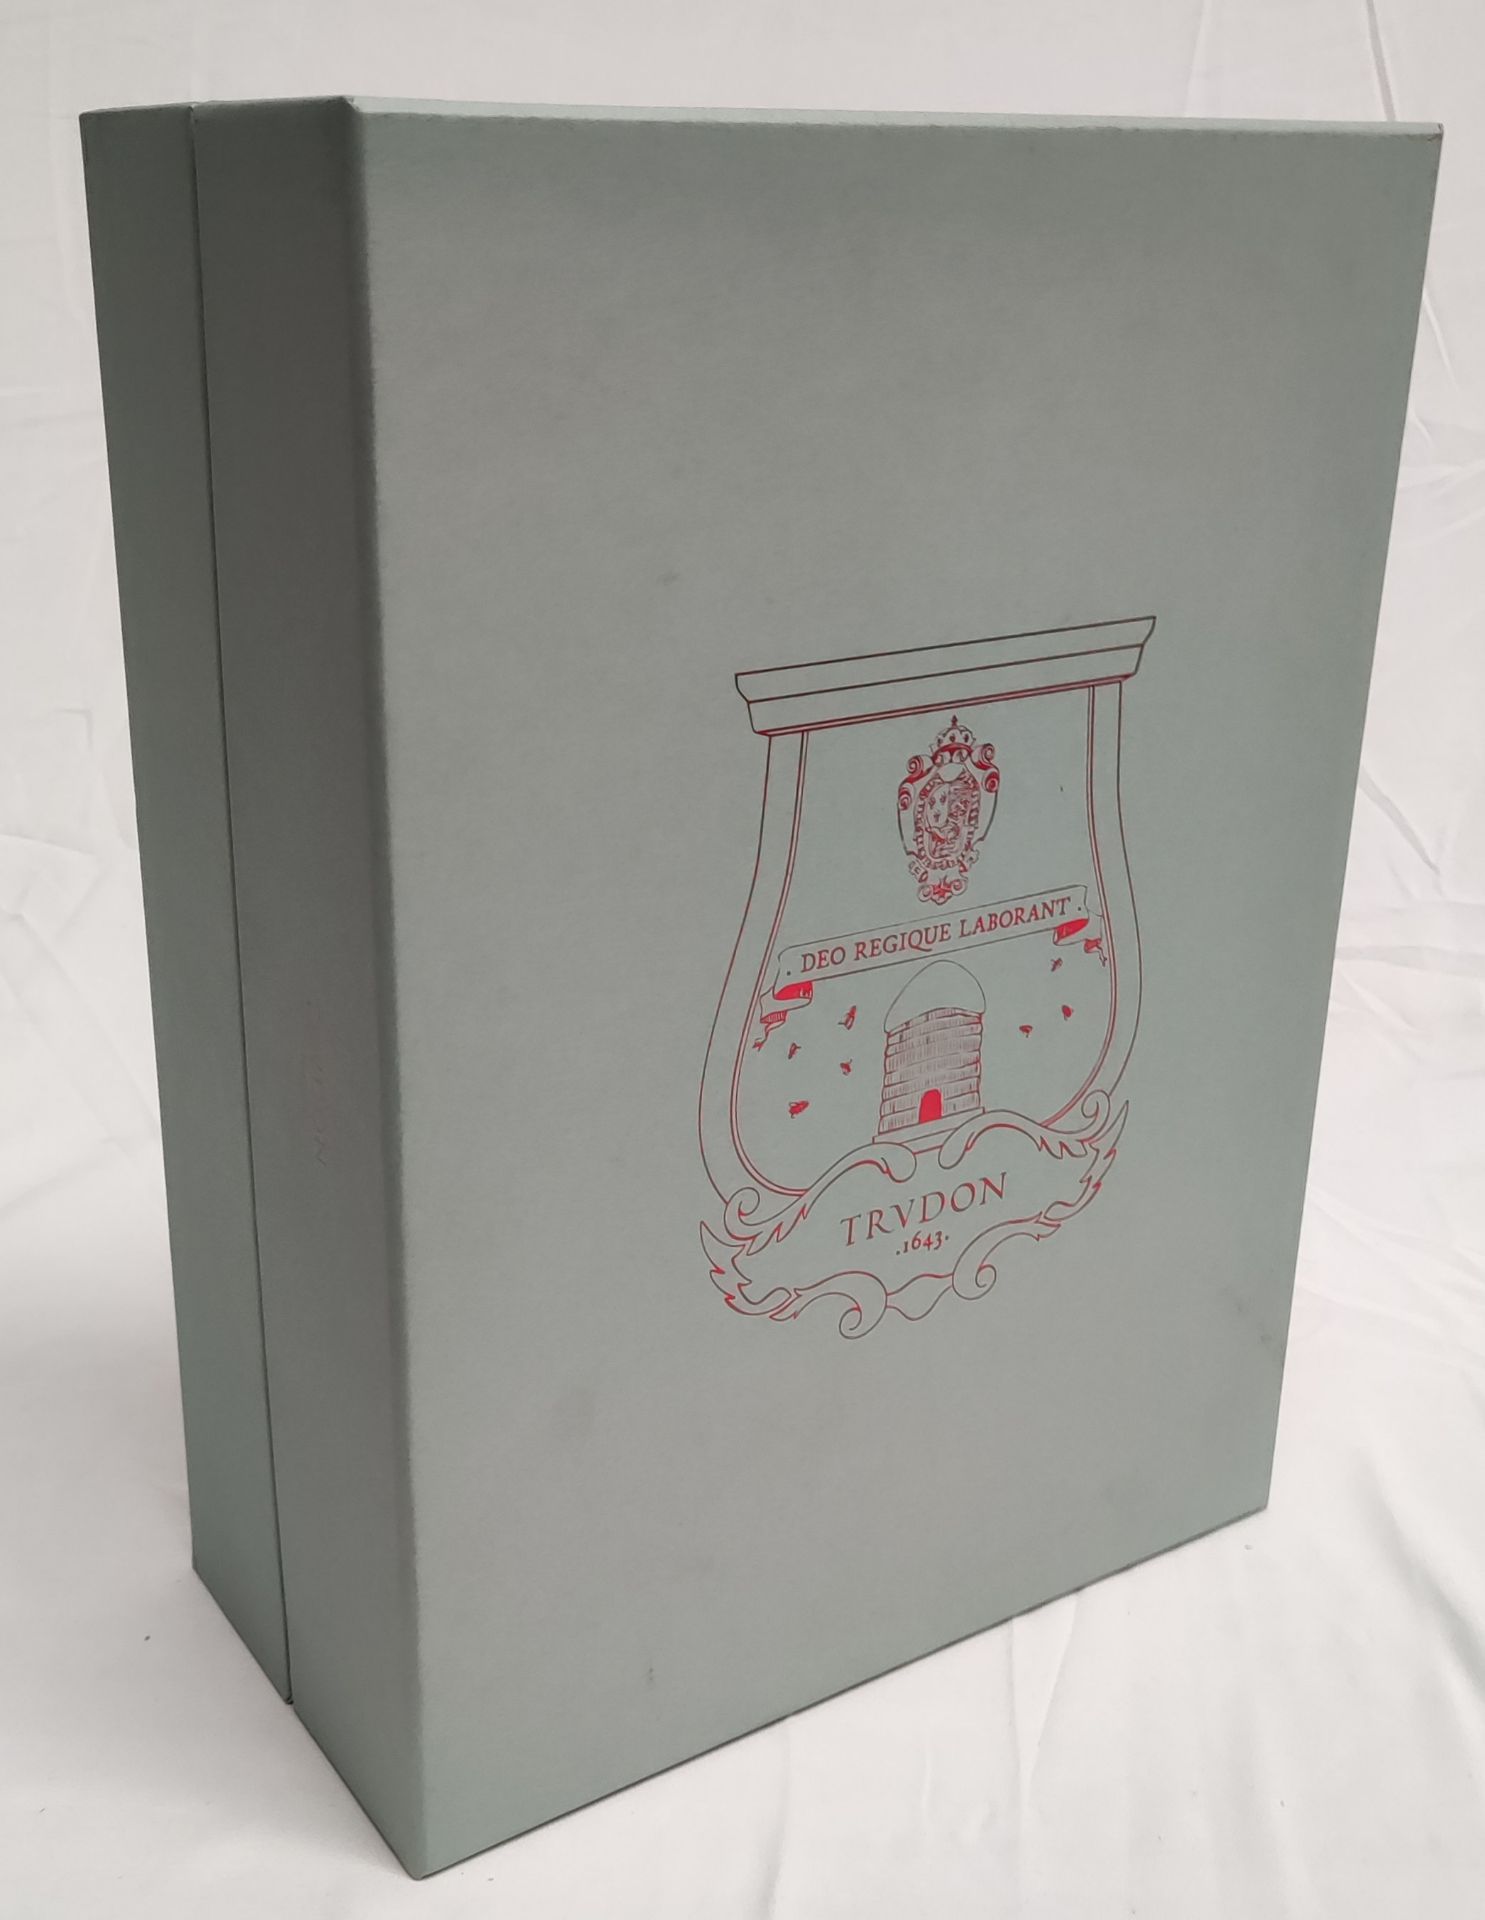 1 x TRUDON La Promeneuse Glass Diffuser - Boxed - Original RRP £320 - Ref: 5211353/HJL358/C19/07- - Image 4 of 16